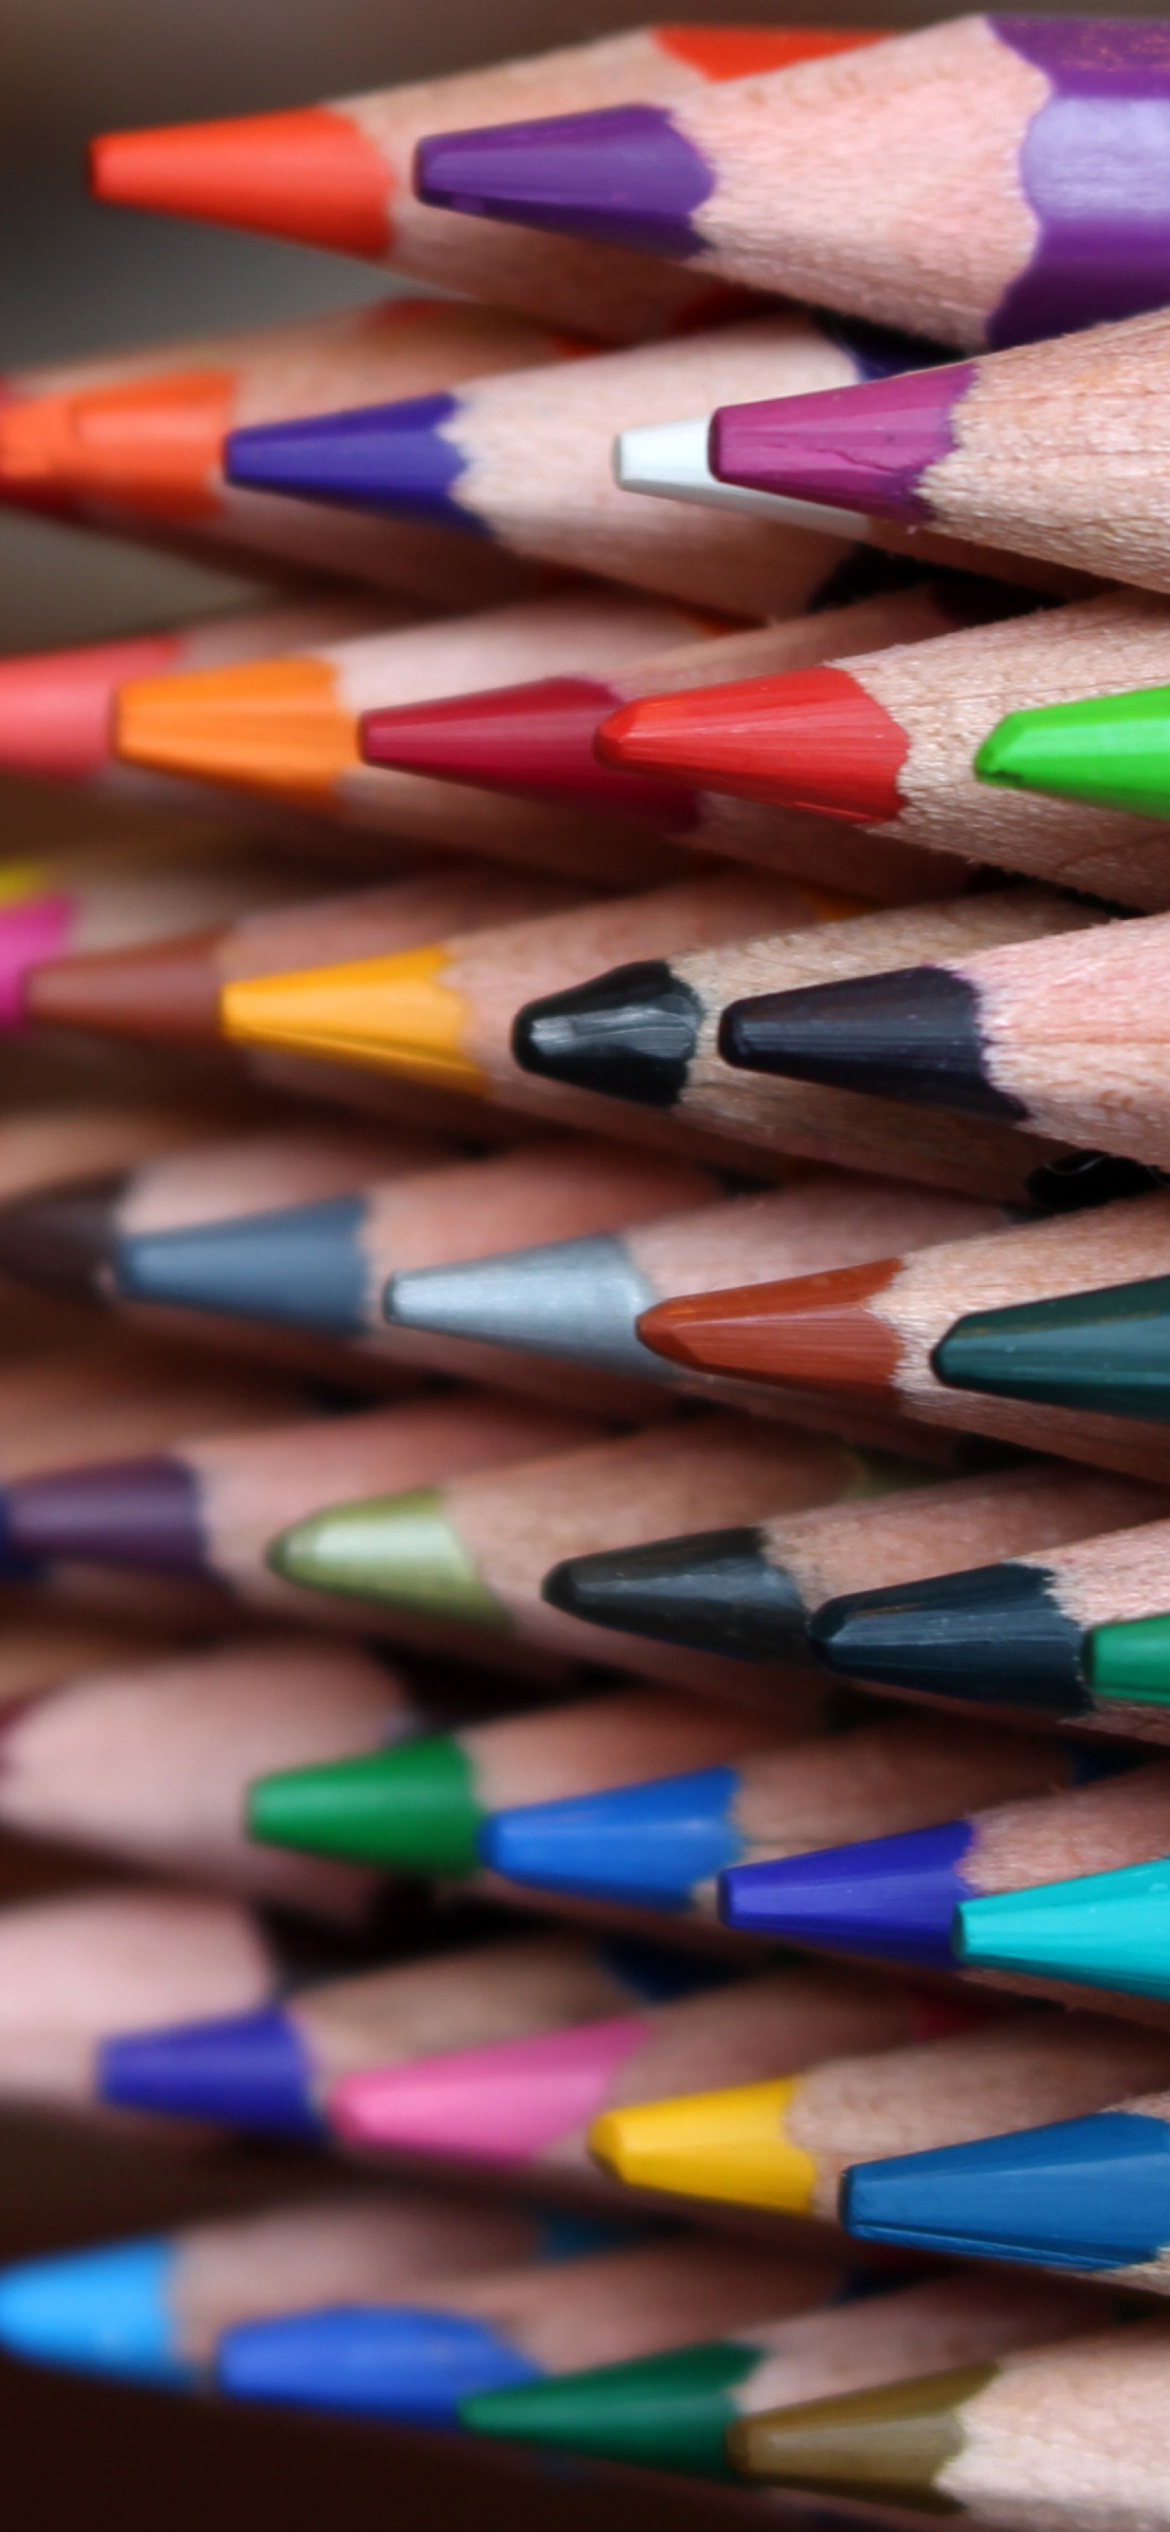 Crayola Colored Pencils wallpaper 1170x2532